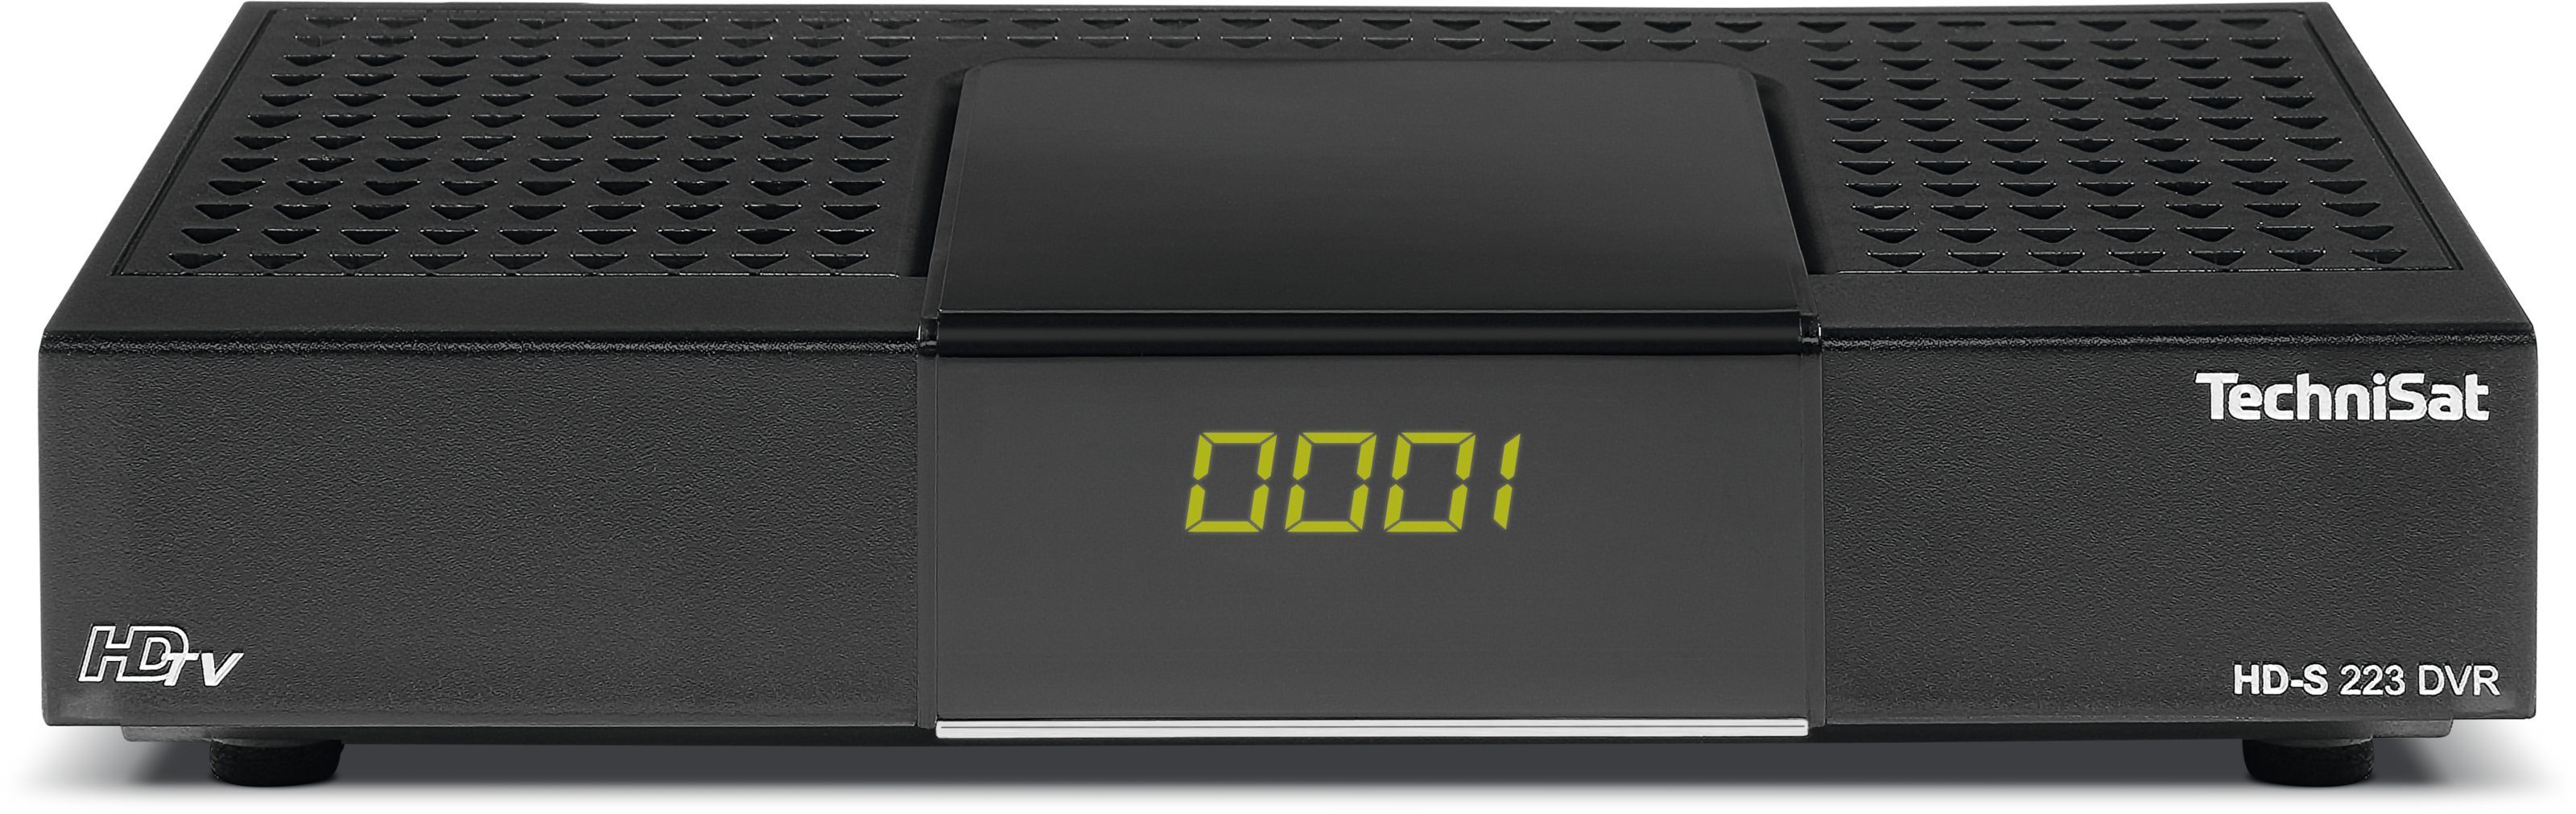 TechniSat HD-S 223 DVR SAT-Receiver (Kompaktes, kleines Gehäuse,  USB-Mediaplayer für Video, Musik und Bilder, Unterstützt Audio Codierformat  AAC, Digitaler Videorekorder auf USB-Datenträger)